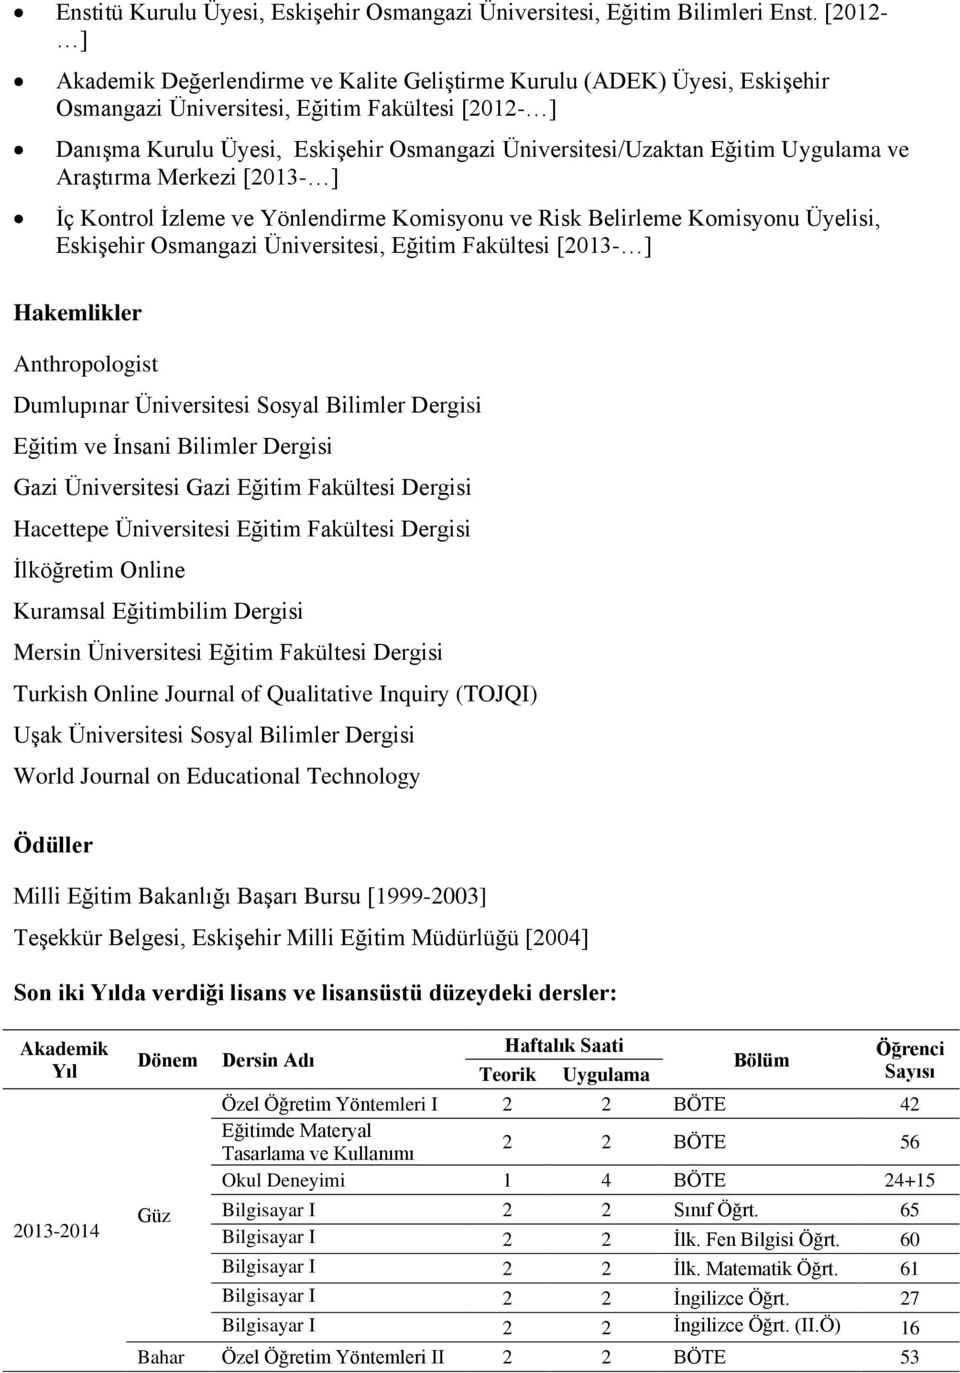 Eğitim Uygulama ve Araştırma Merkezi [2013- ] İç Kontrol İzleme ve Yönlendirme Komisyonu ve Risk Belirleme Komisyonu Üyelisi, Eskişehir Osmangazi Üniversitesi, Eğitim Fakültesi [2013- ] Hakemlikler